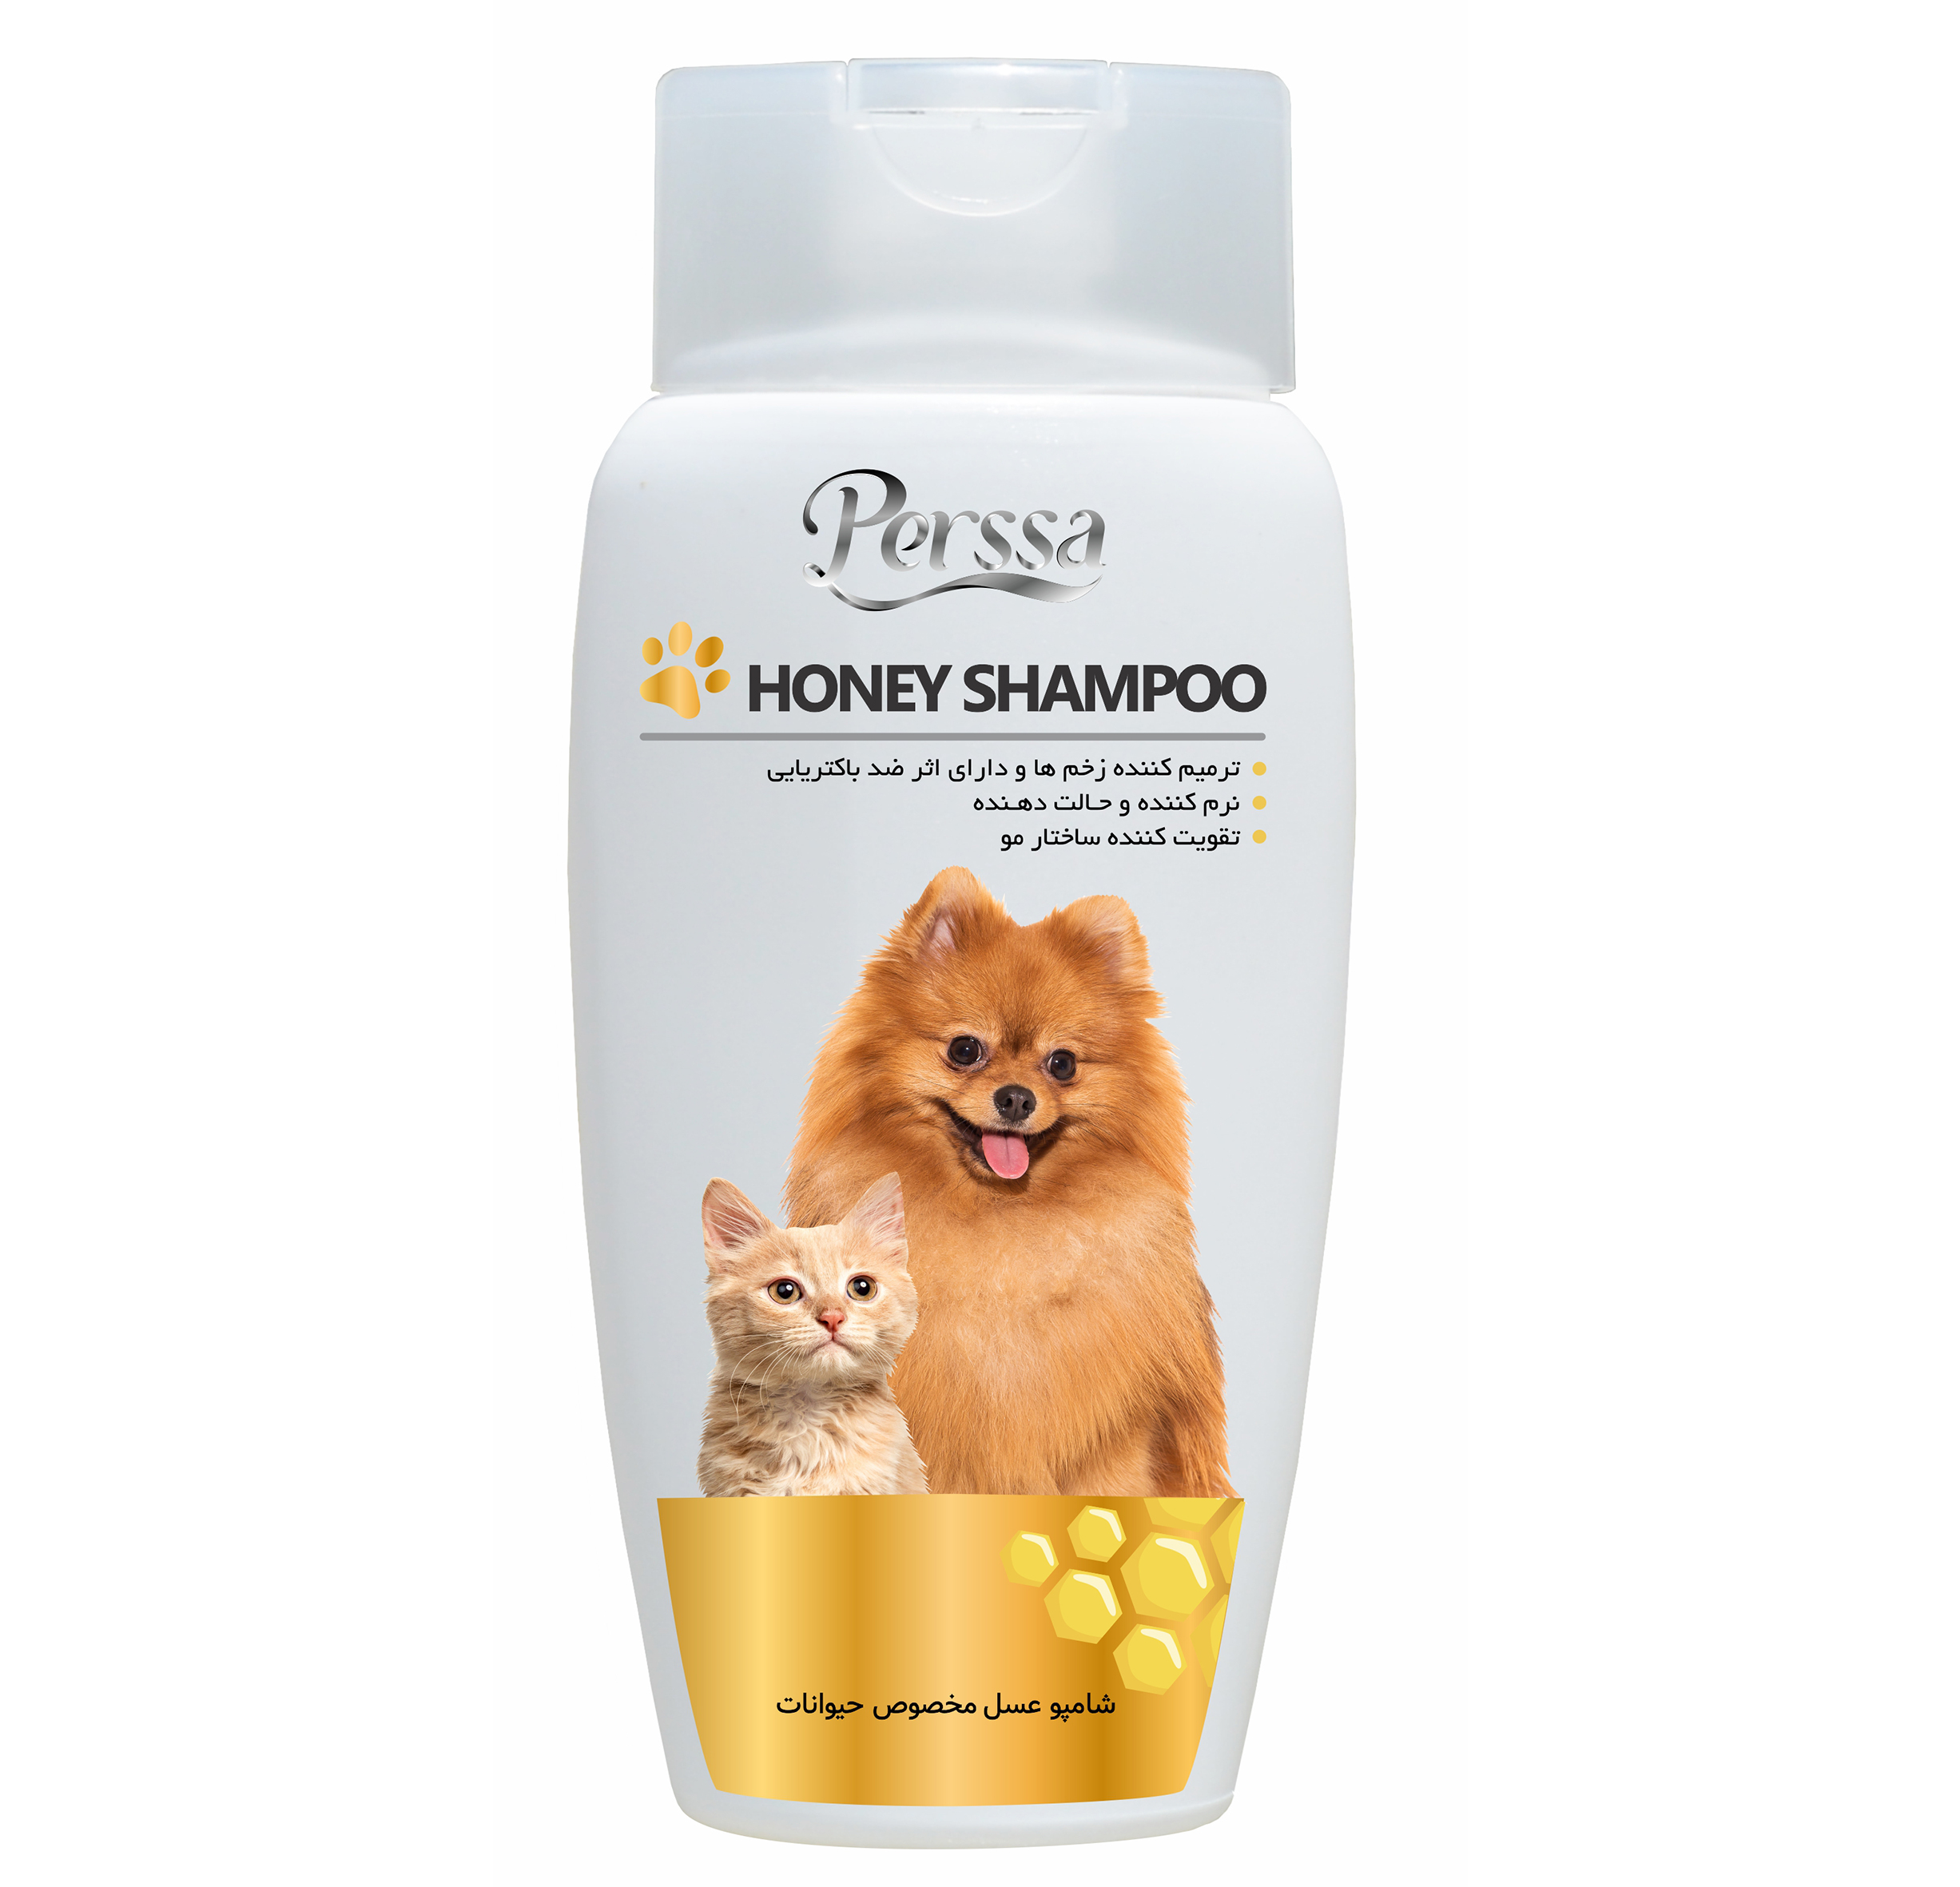 honey shampoo